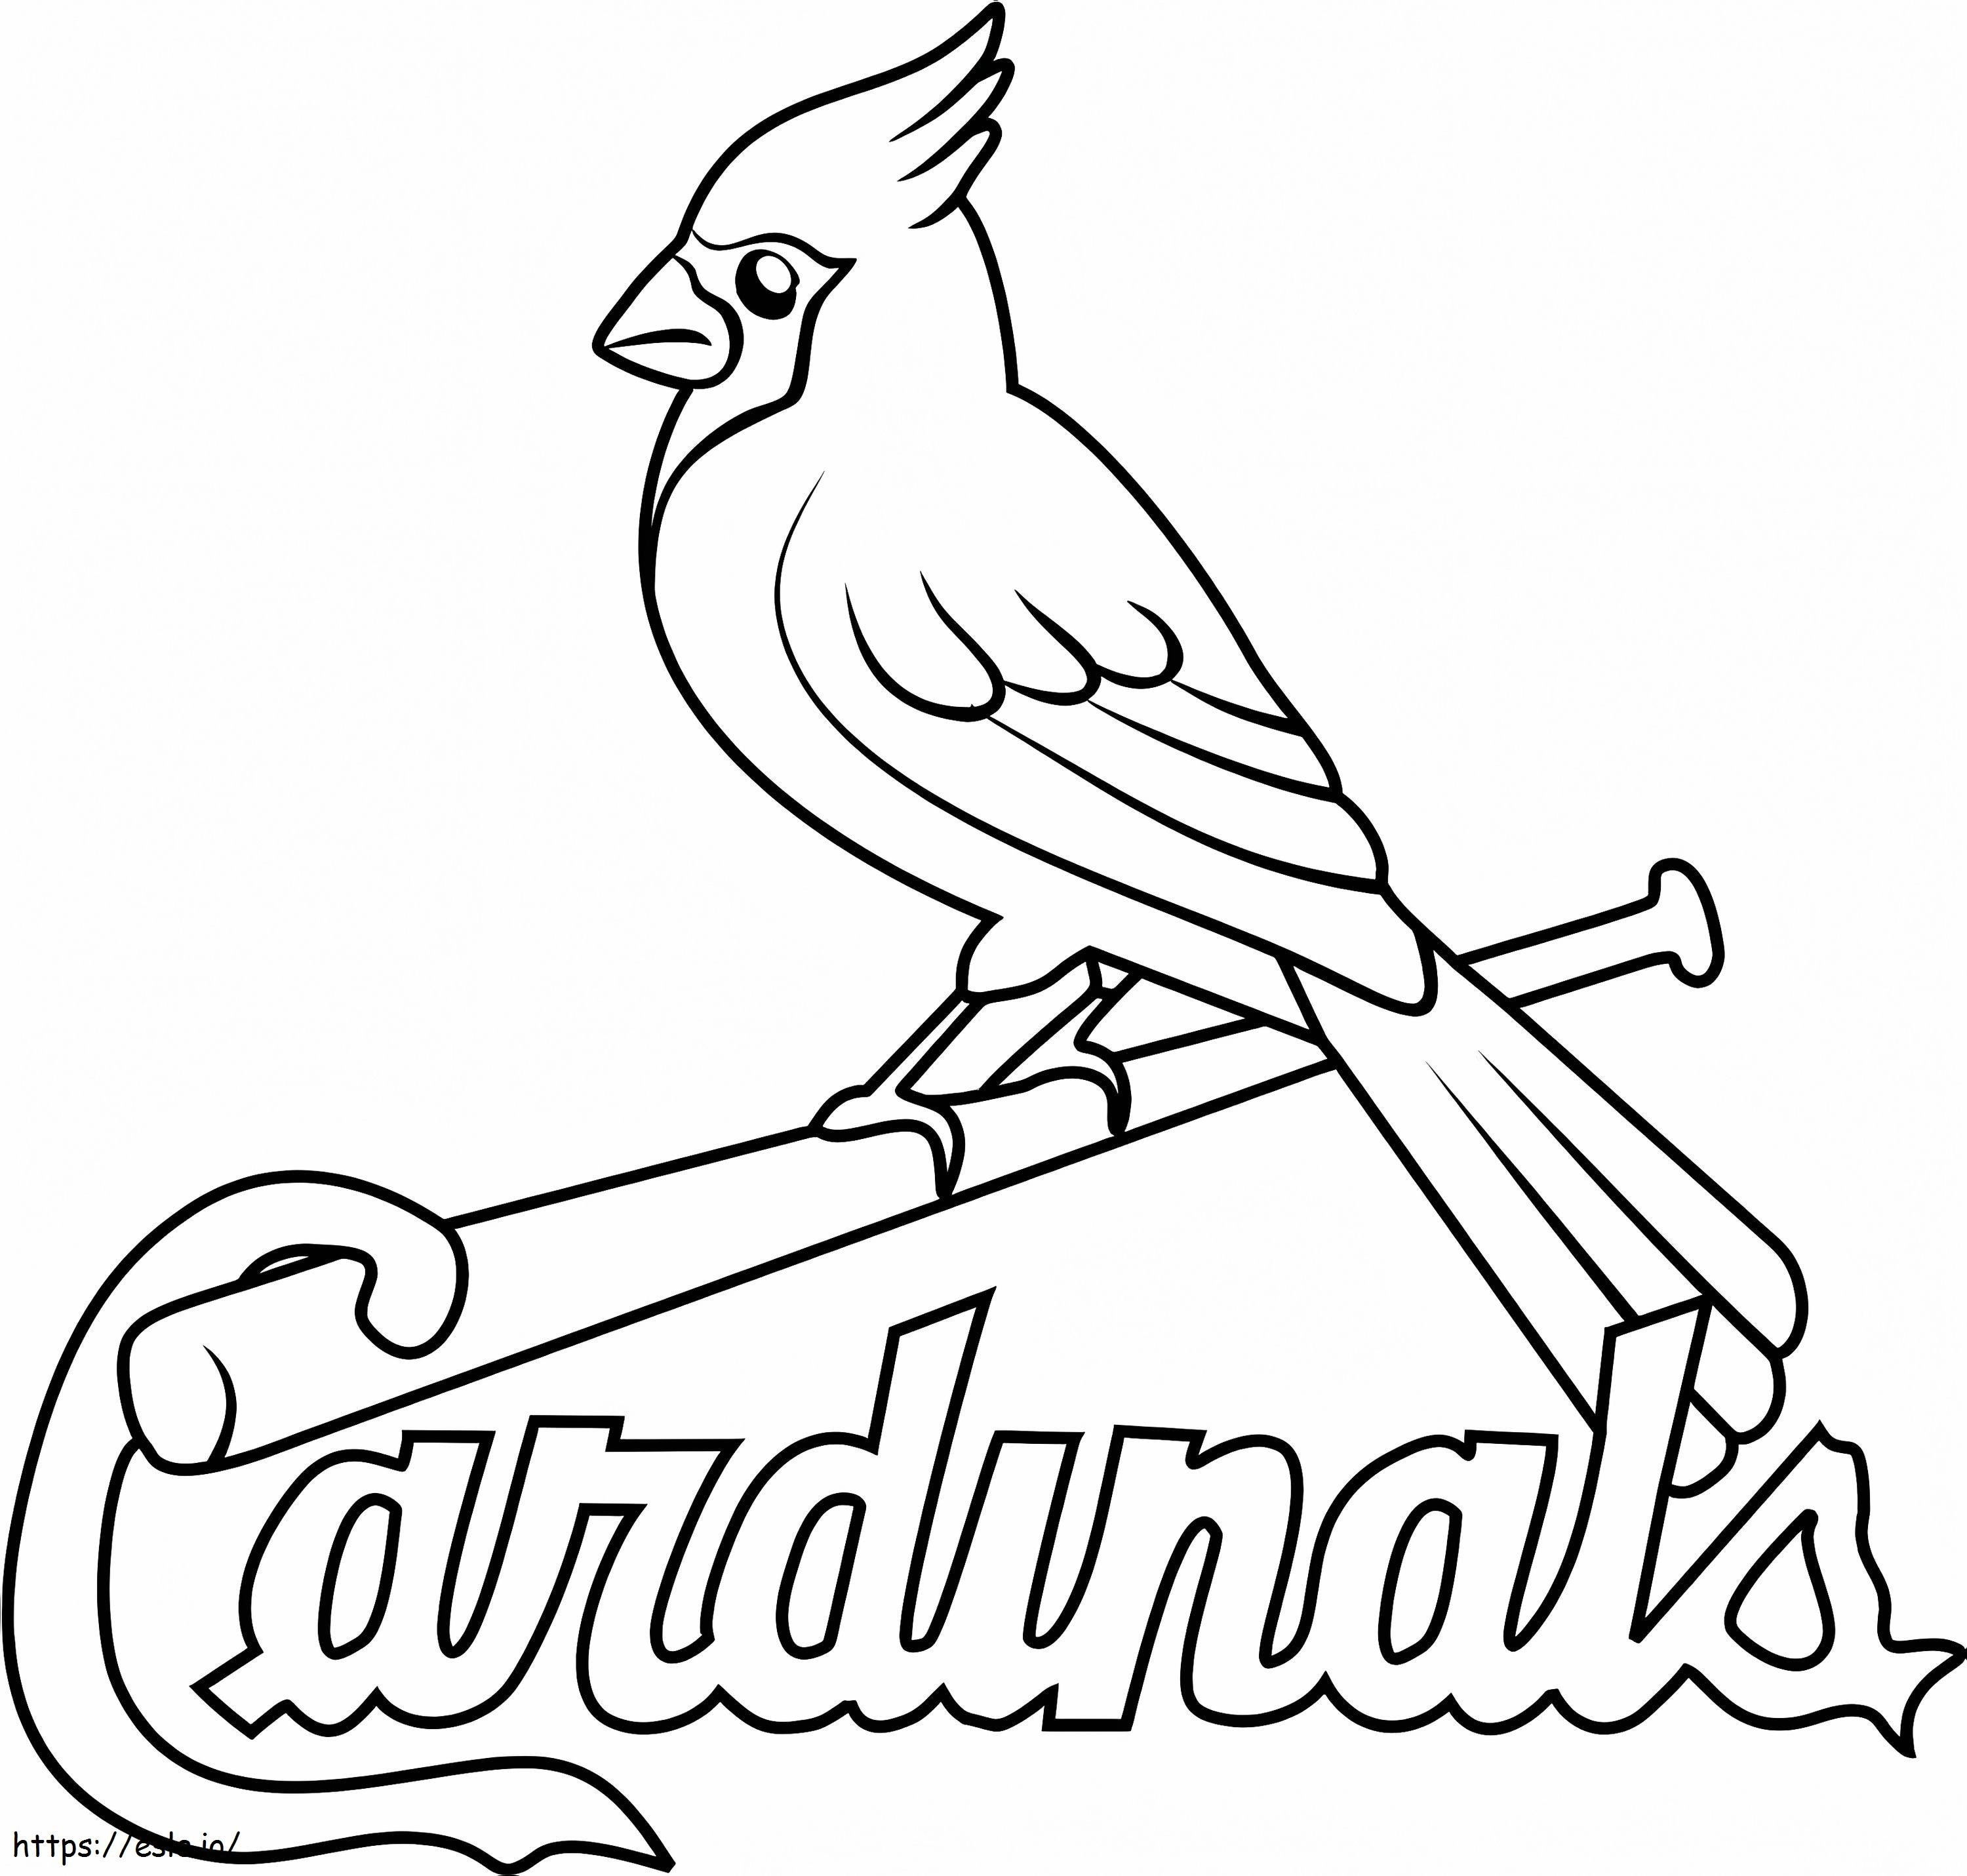 Logo der St. Louis Cardinals ausmalbilder